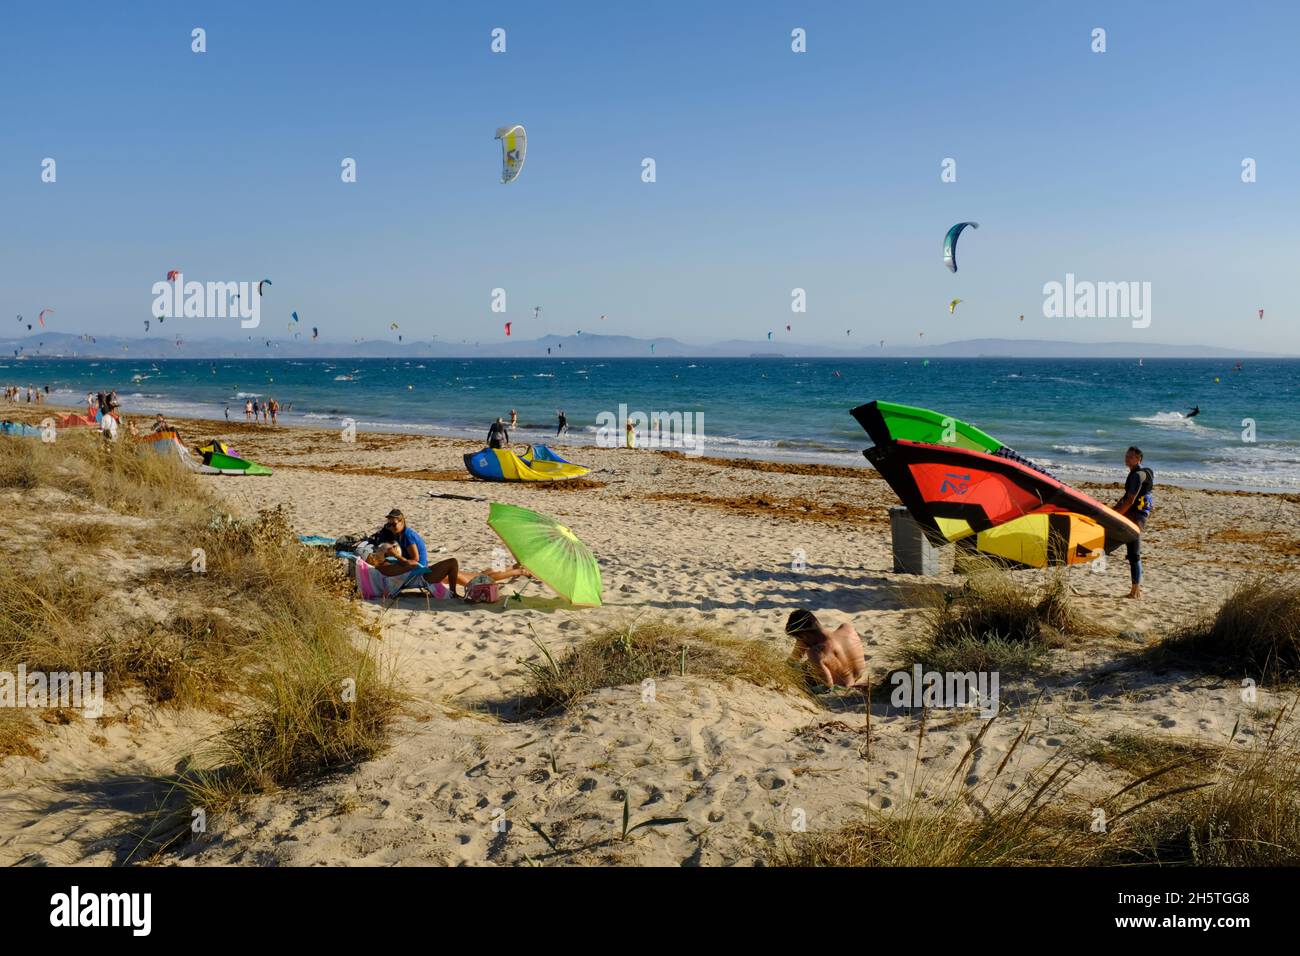 Kitesurfers préparant leurs cerfs-volants et baigneurs de soleil sur la plage de Los Lances.Tarifa, Costa de la Luz, province de Cadix, Andalousie, Espagne Banque D'Images